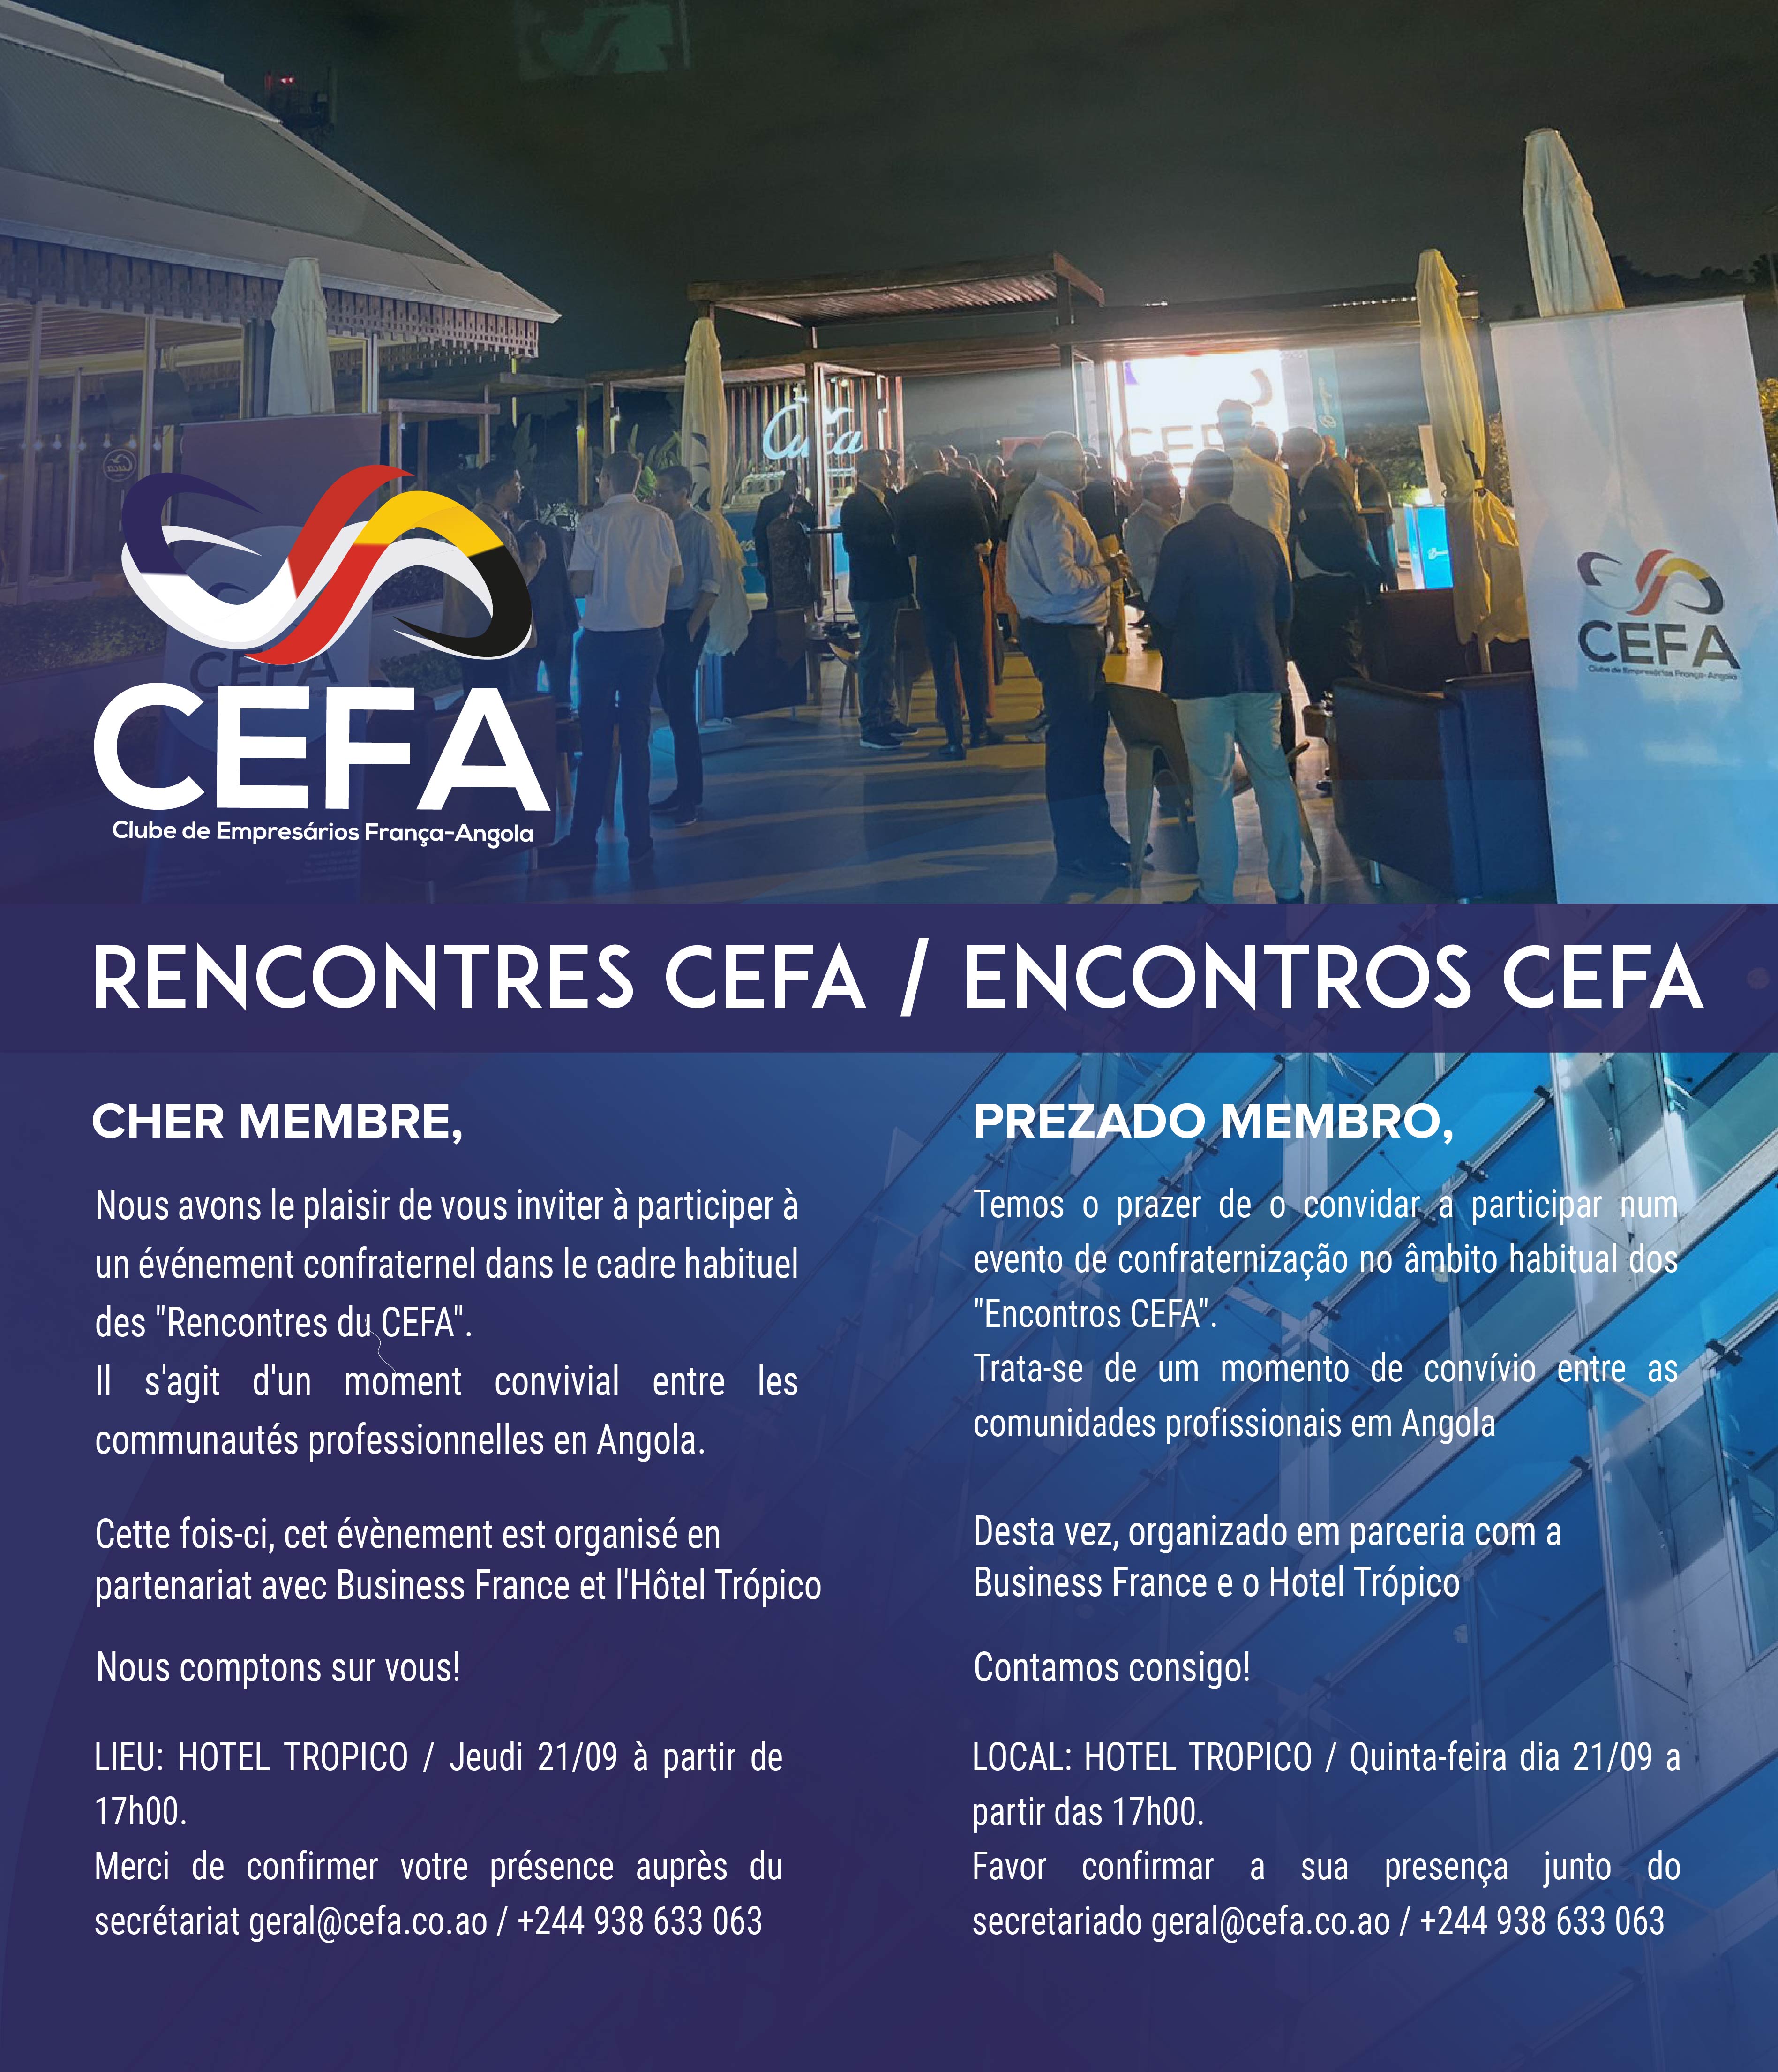 Encontros CEFA